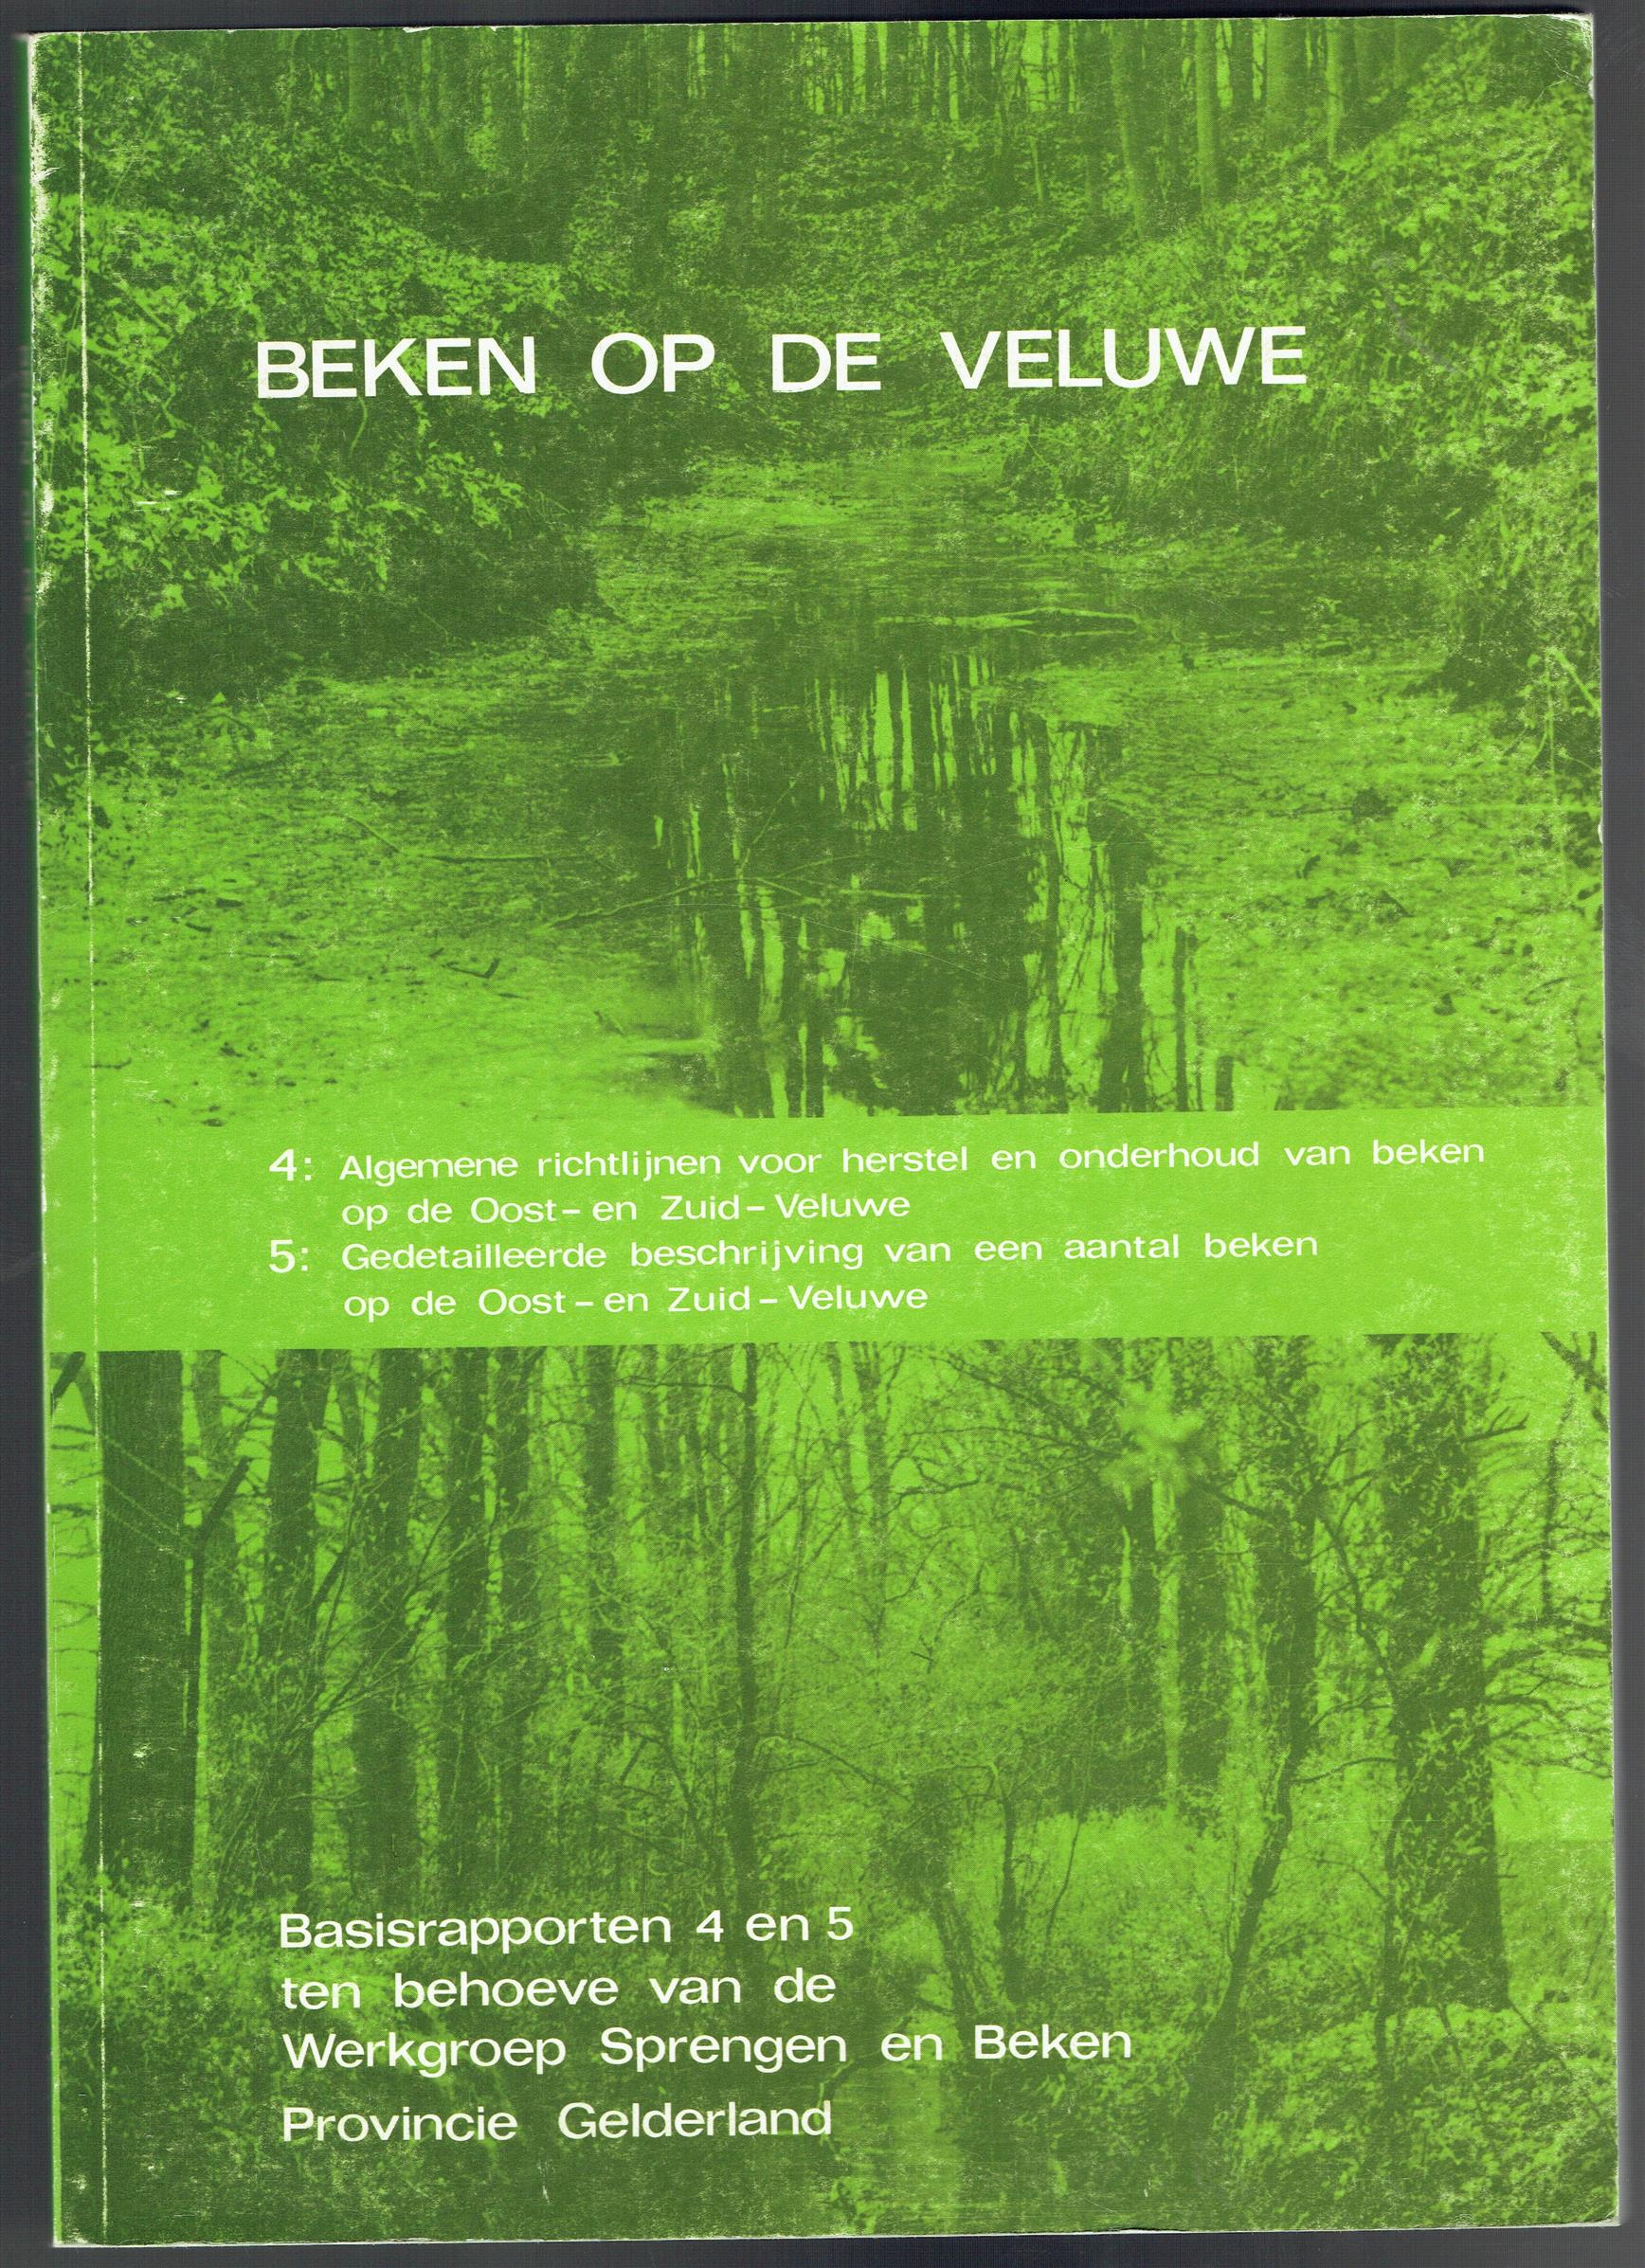 Schouten, P.B. - Beken op de Veluwe: basisrapporten 4 en 5 ten behoeve van de Werkgroep Sprengen en Beken Provincie Gelderland